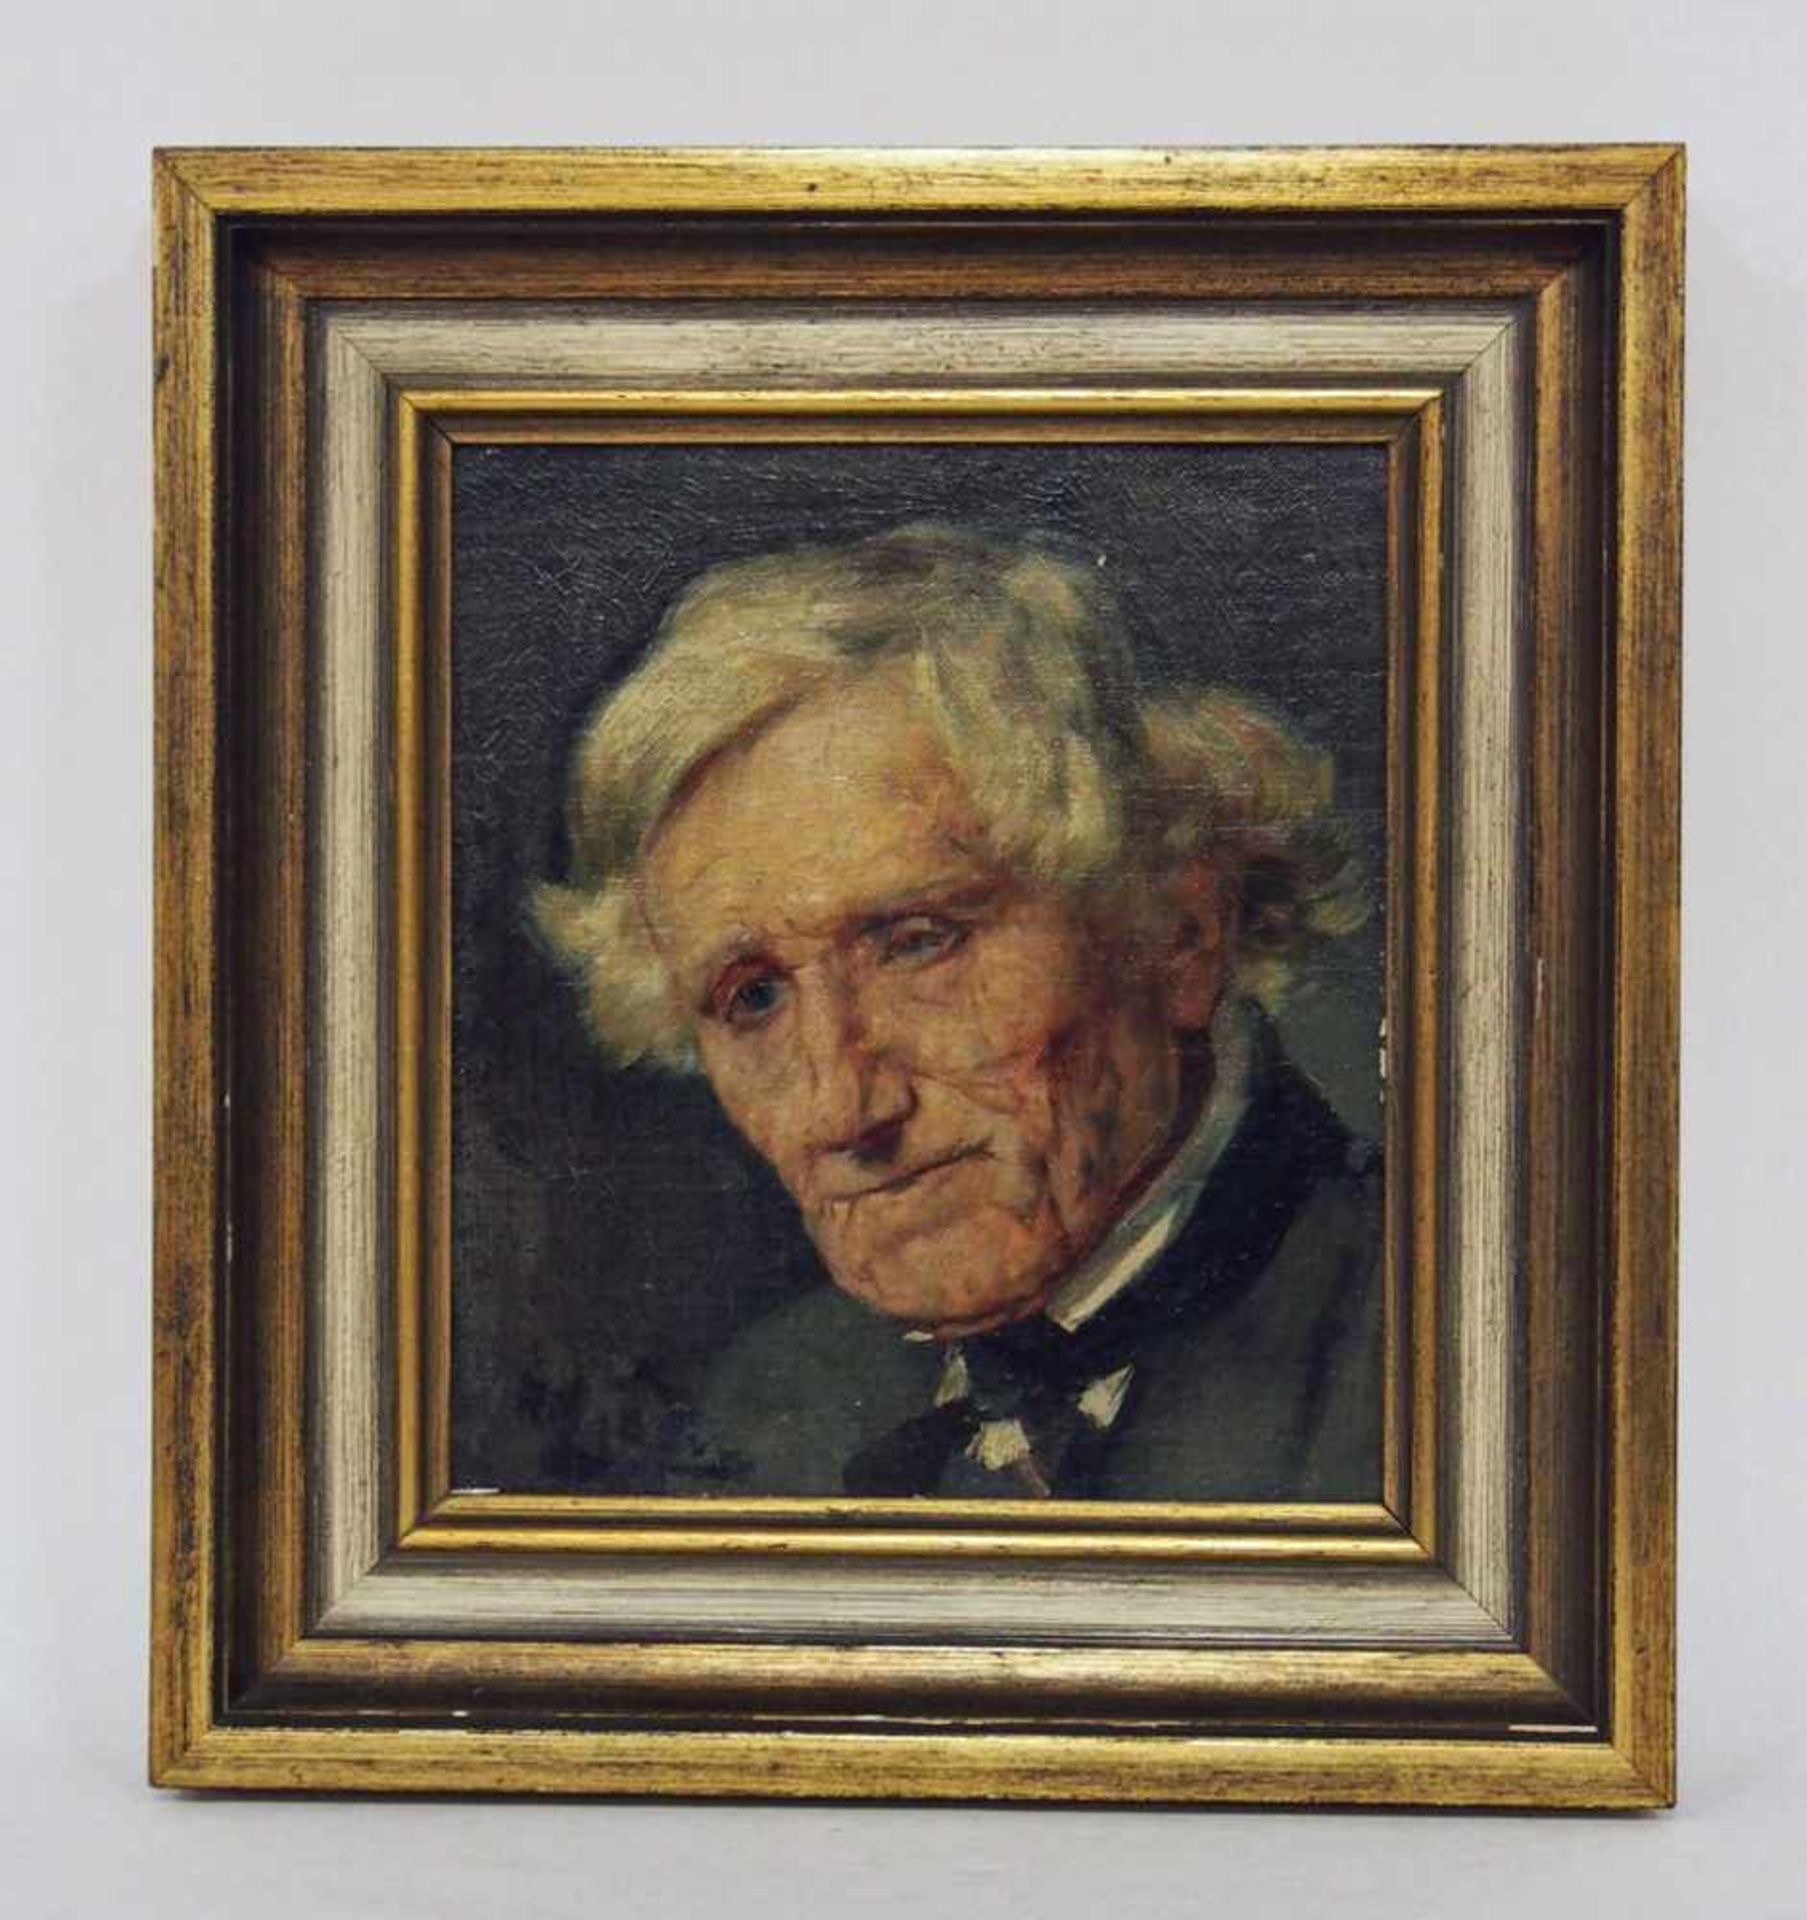 LINS, Adolf1856-1927Porträt eines alten MannesÖl auf Malkarton, signiert unten links, 21 x 19 cm, - Bild 2 aus 2